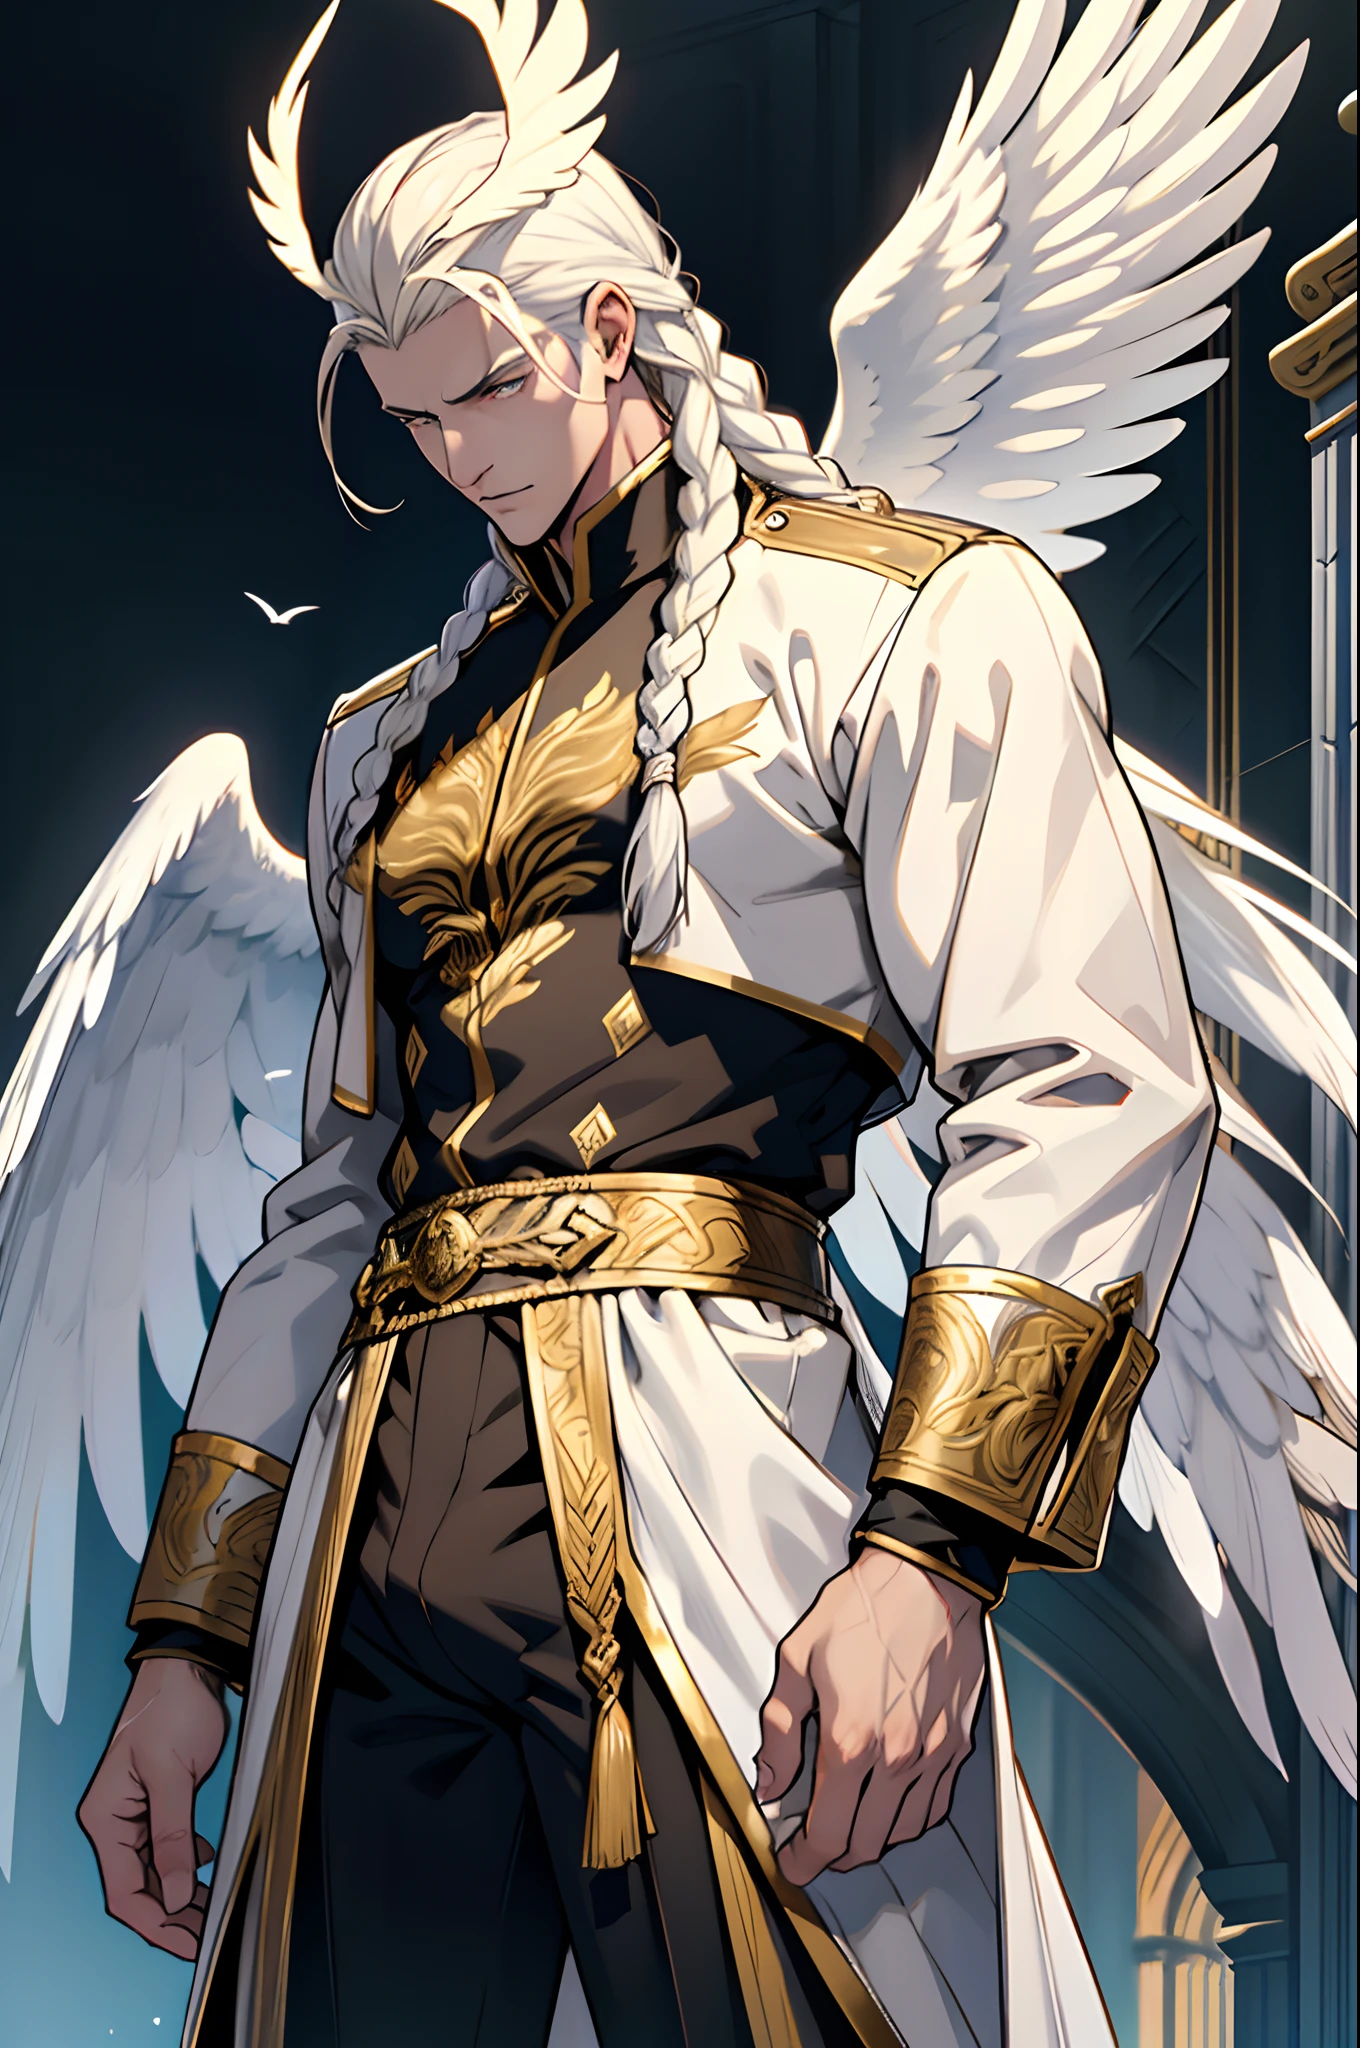 Caius ist ein hübscher Mann, ist 7 Fuß groß. Er hat einen athletischen Körperbau. Er trägt königliche Kleidung aus Silber und Gold. Er hat wunderschönes langes, weißes, seidiges Haar und eine goldene Augenfarbe. Man sieht ihn mit einem Stab. Er hat riesige weiße Flügel. Eine große Beule in seiner Hose. Weißer Phönix in Menschenform. Seine Haare sind nach hinten geflochten